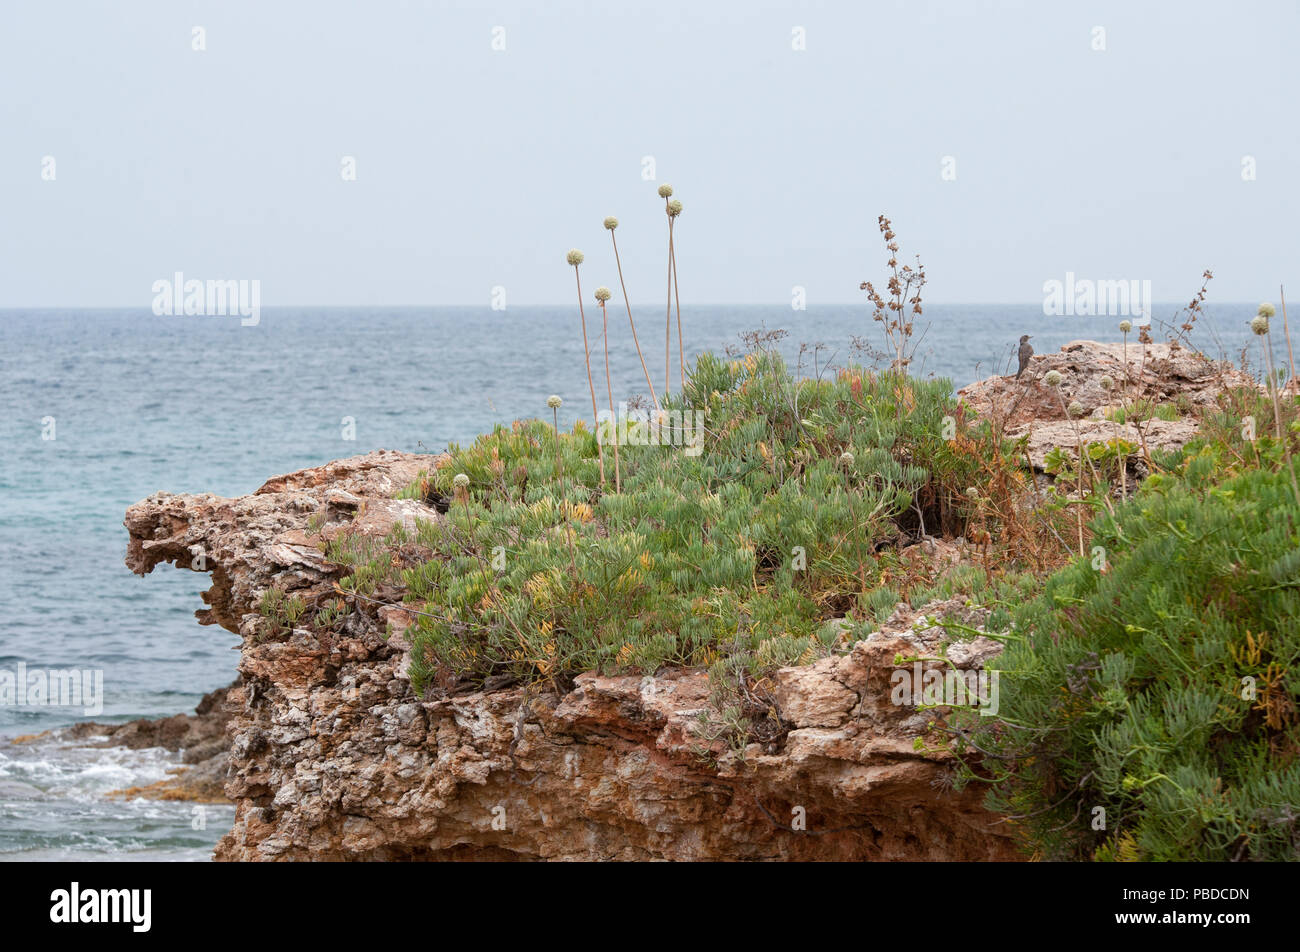 Rocas costeras ibicenca con arbustos Rock Samphire y Allium, y mujeres Blue Rock afta, Ibiza, Islas Baleares, el Mar Mediterráneo, España Foto de stock